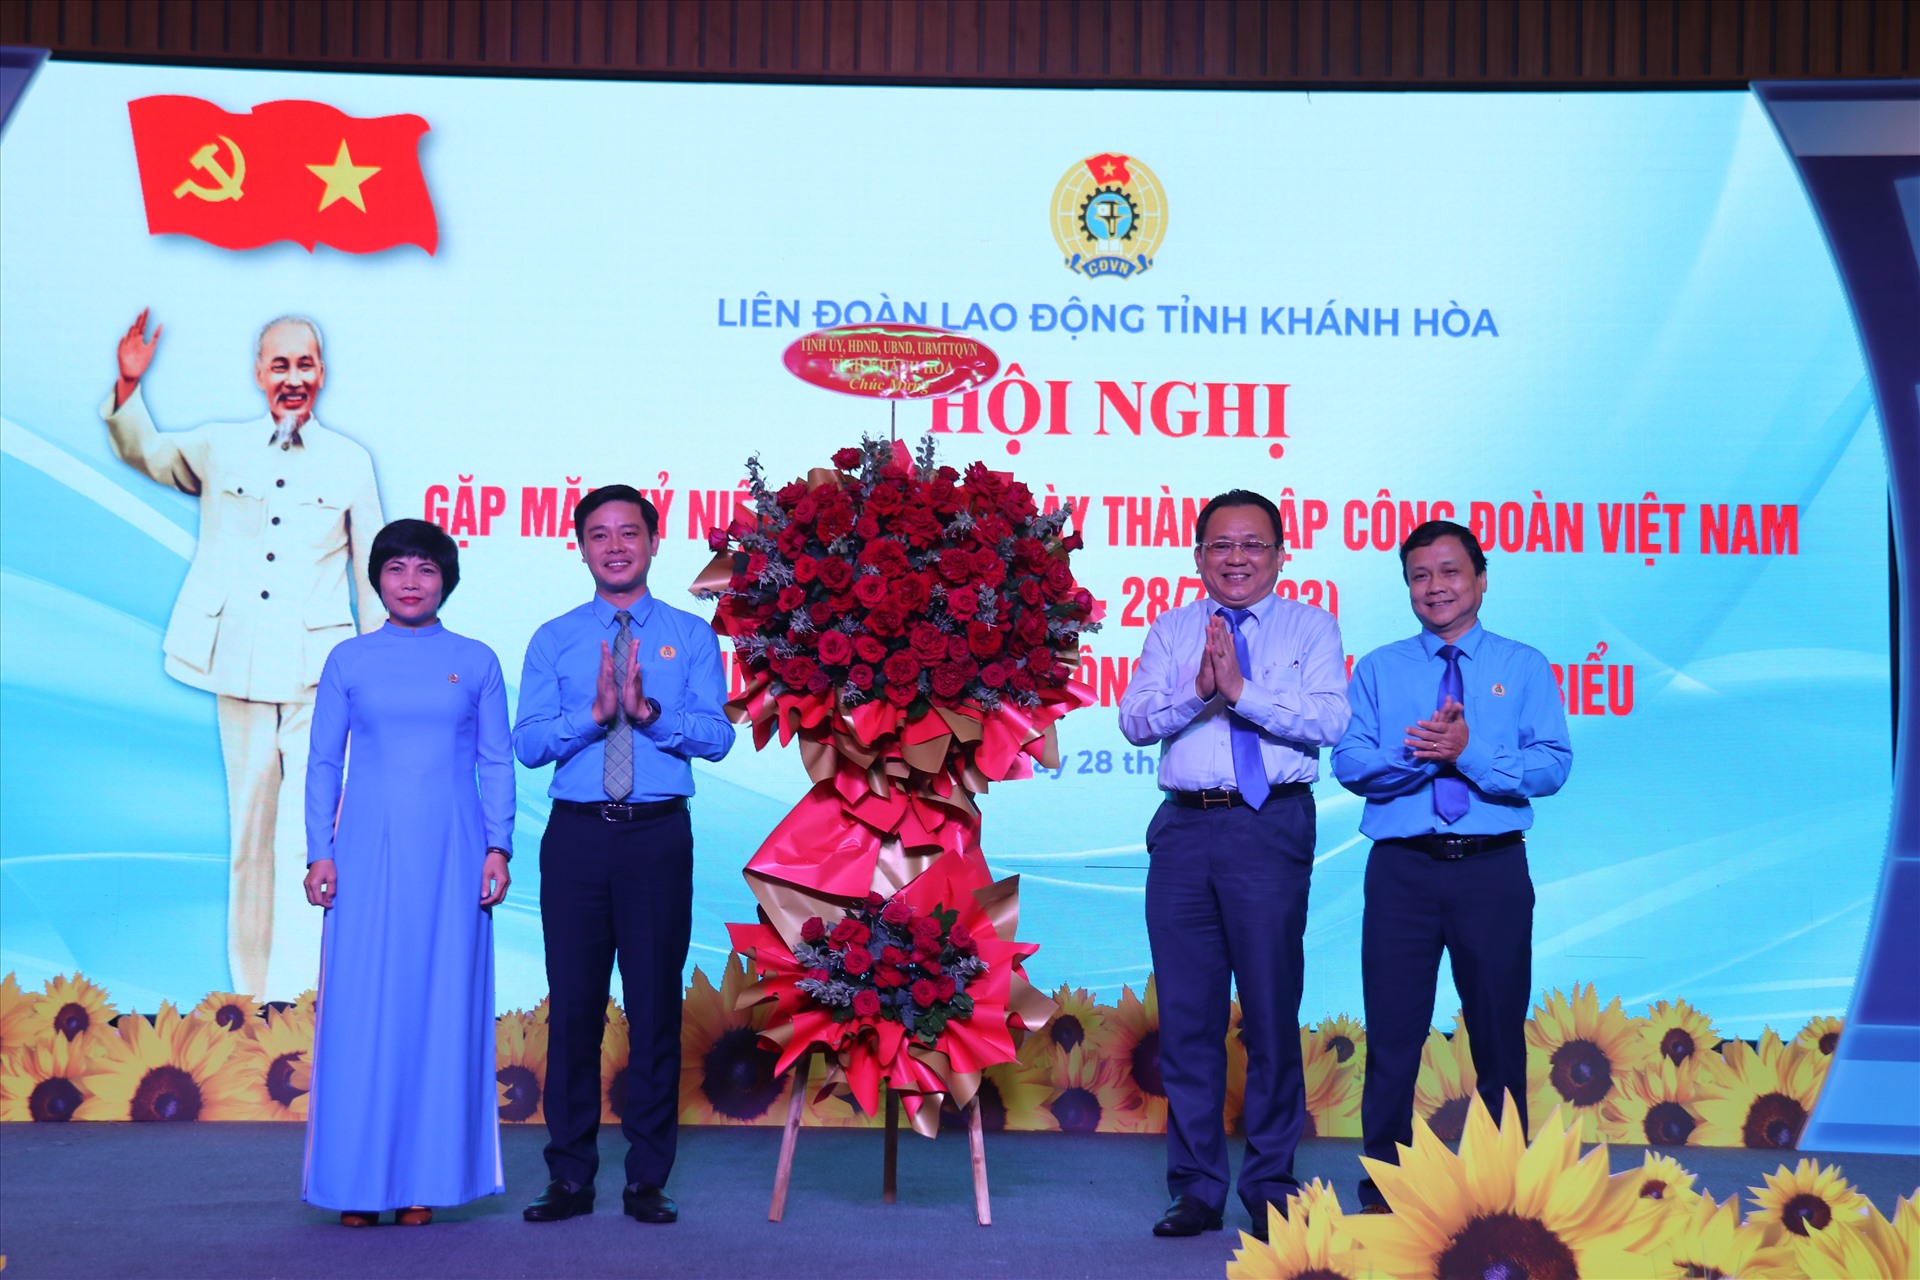 Phó Chủ tịch UBND tỉnh Khánh Hòa ông Lê Hữu Hoàng tặng hoa chúc mừng ngày thành lập Công đoàn Việt Nam. Ảnh: Phương Linh